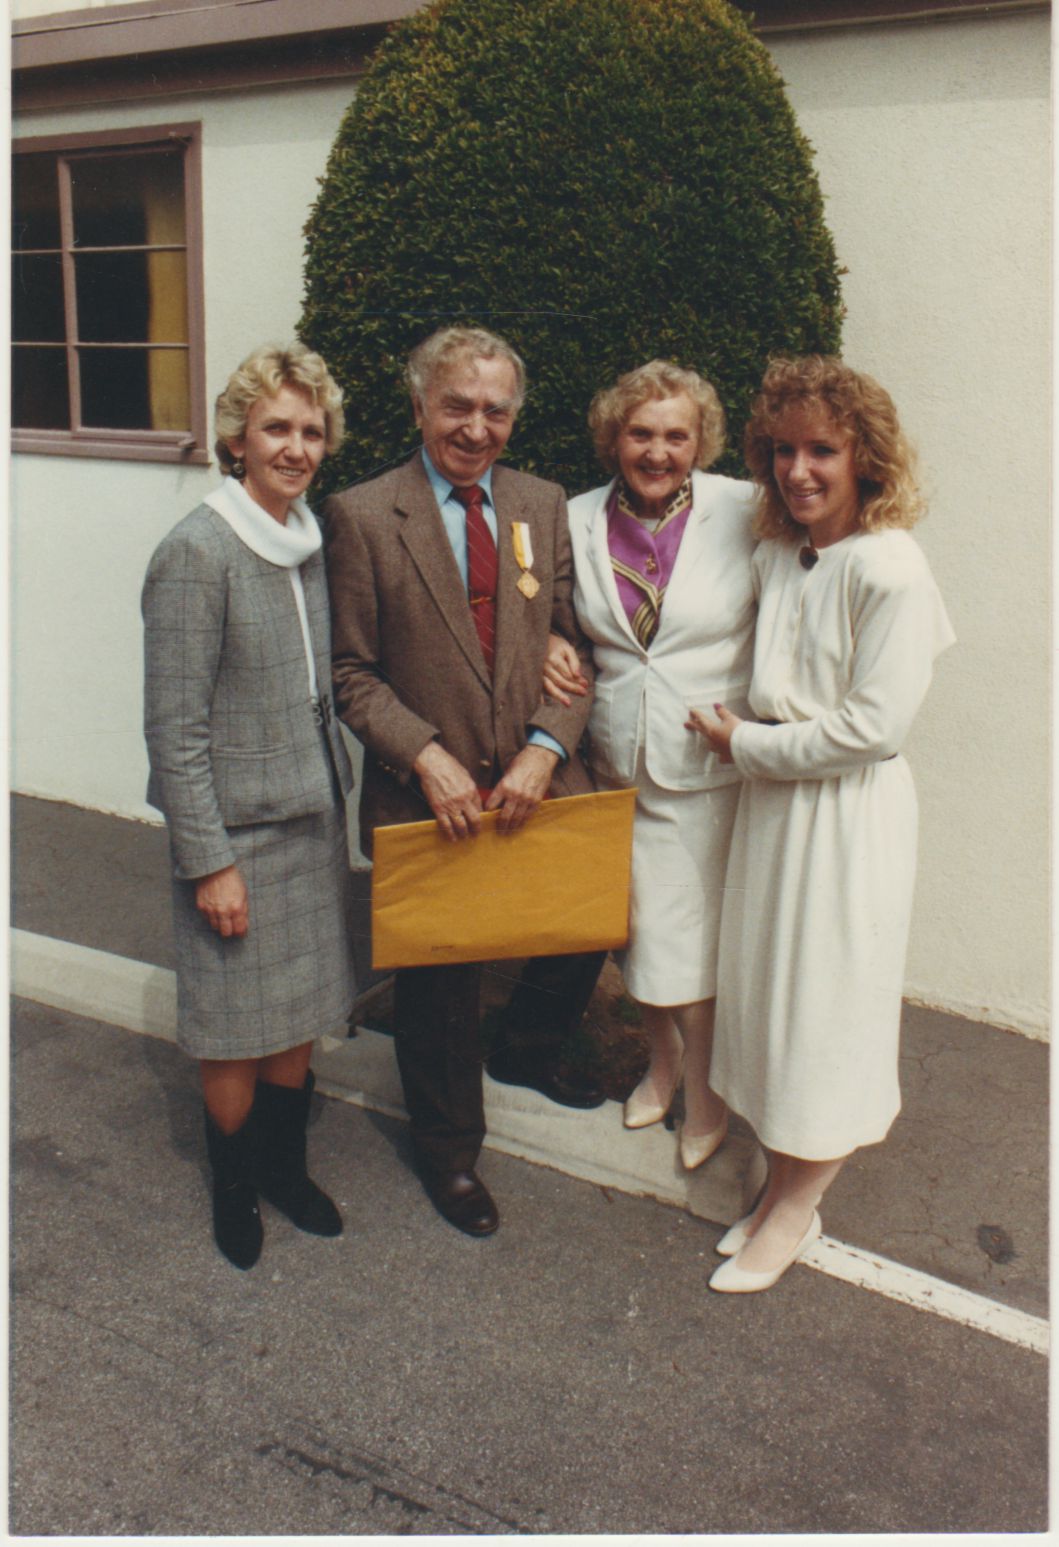 Po Jono Pauliaus II medalio įteikimo šventės Los Andžele 1988 m. kovo 6d. Iš kairės: Saulė Brazdžionytė, B. Brazdžionis, A. Brazdžionienė, vaikaitė Dalita Trotman.